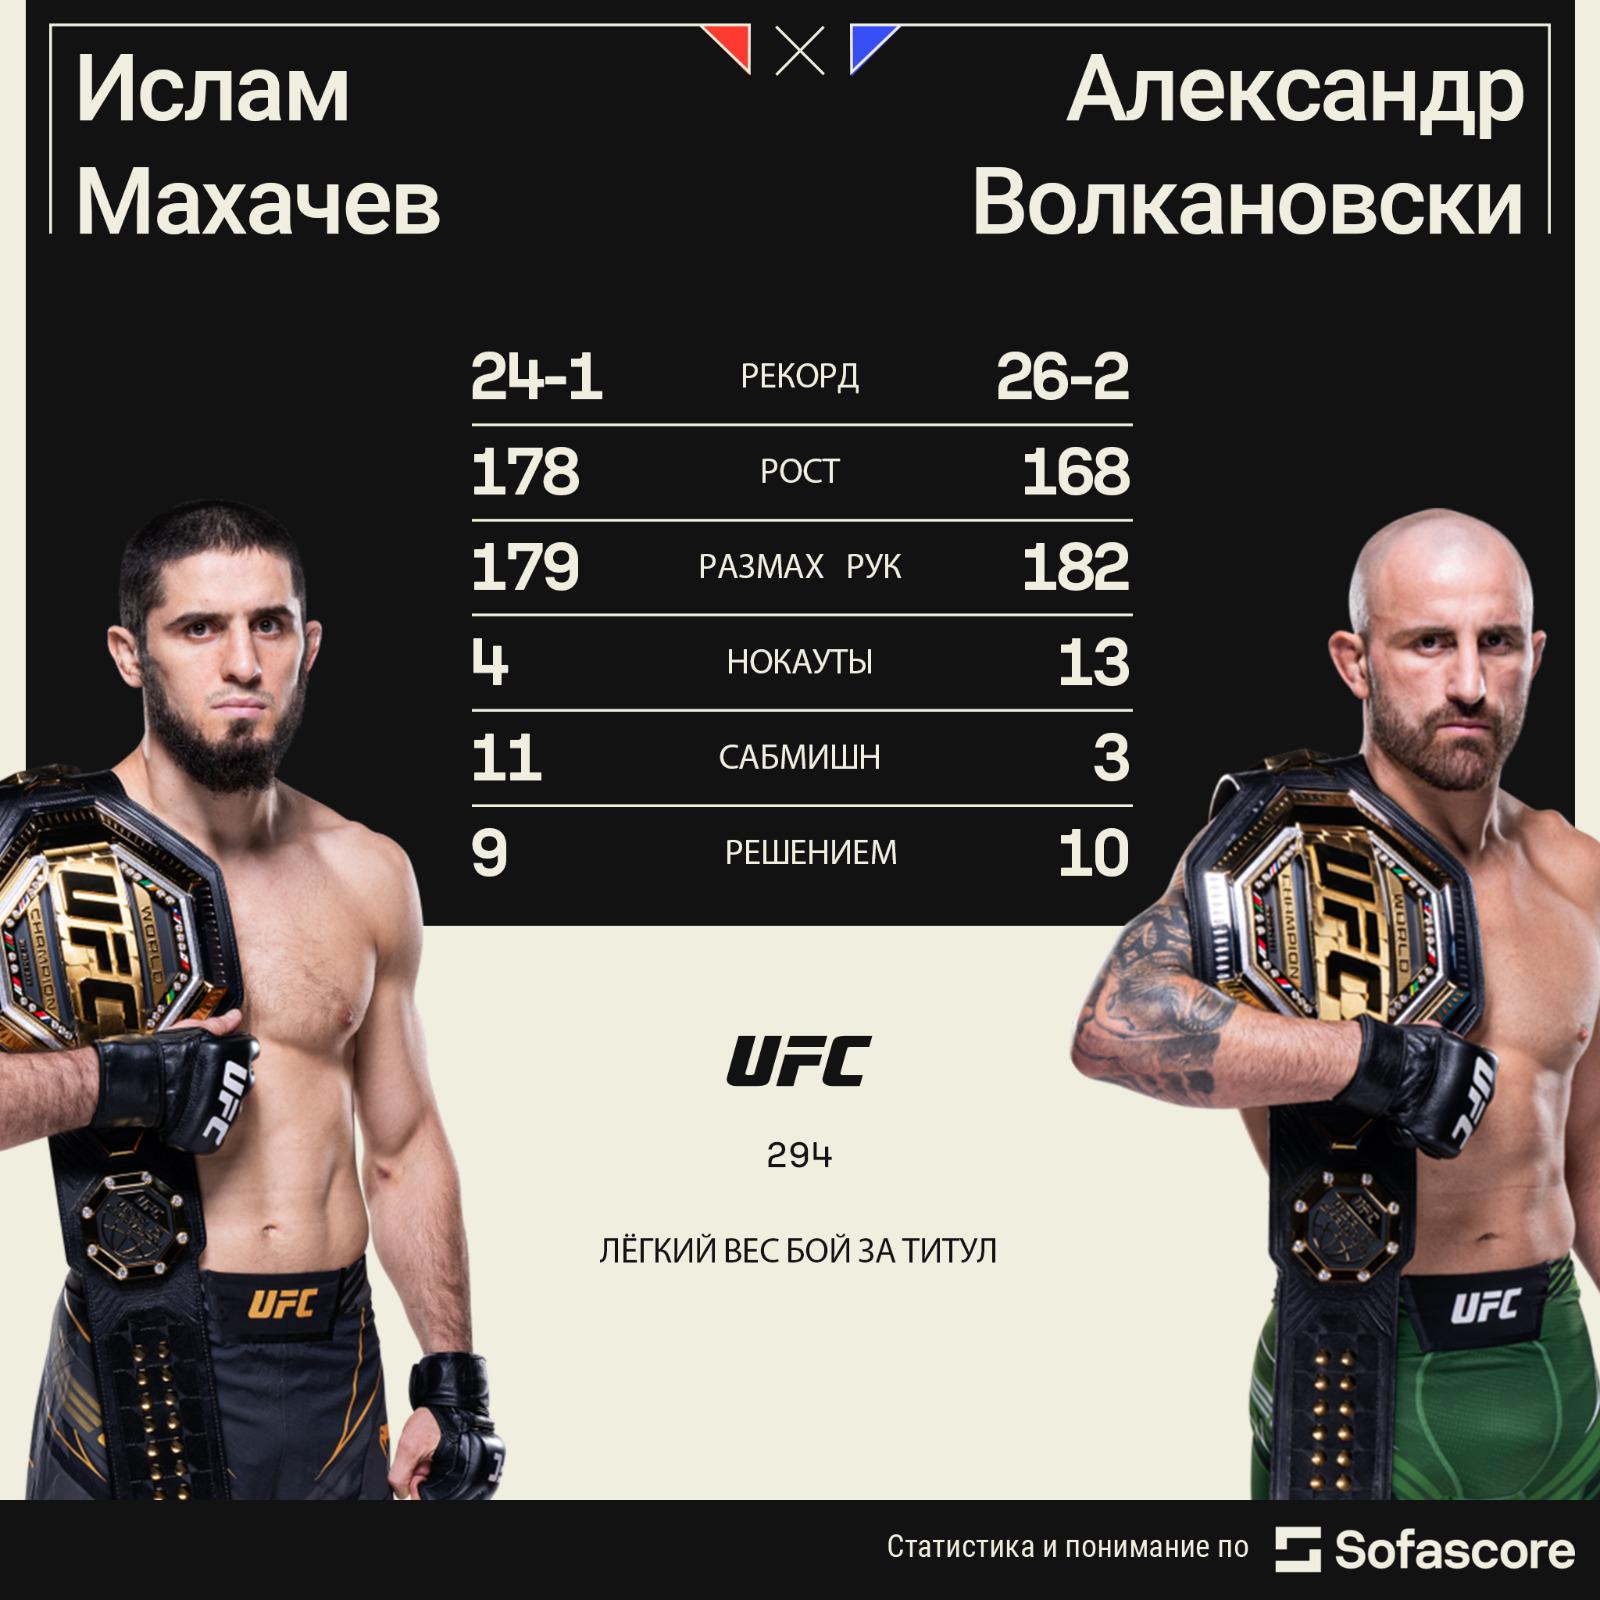 Уроженец Дагестана Мокаев выиграл пятый поединок в UFC